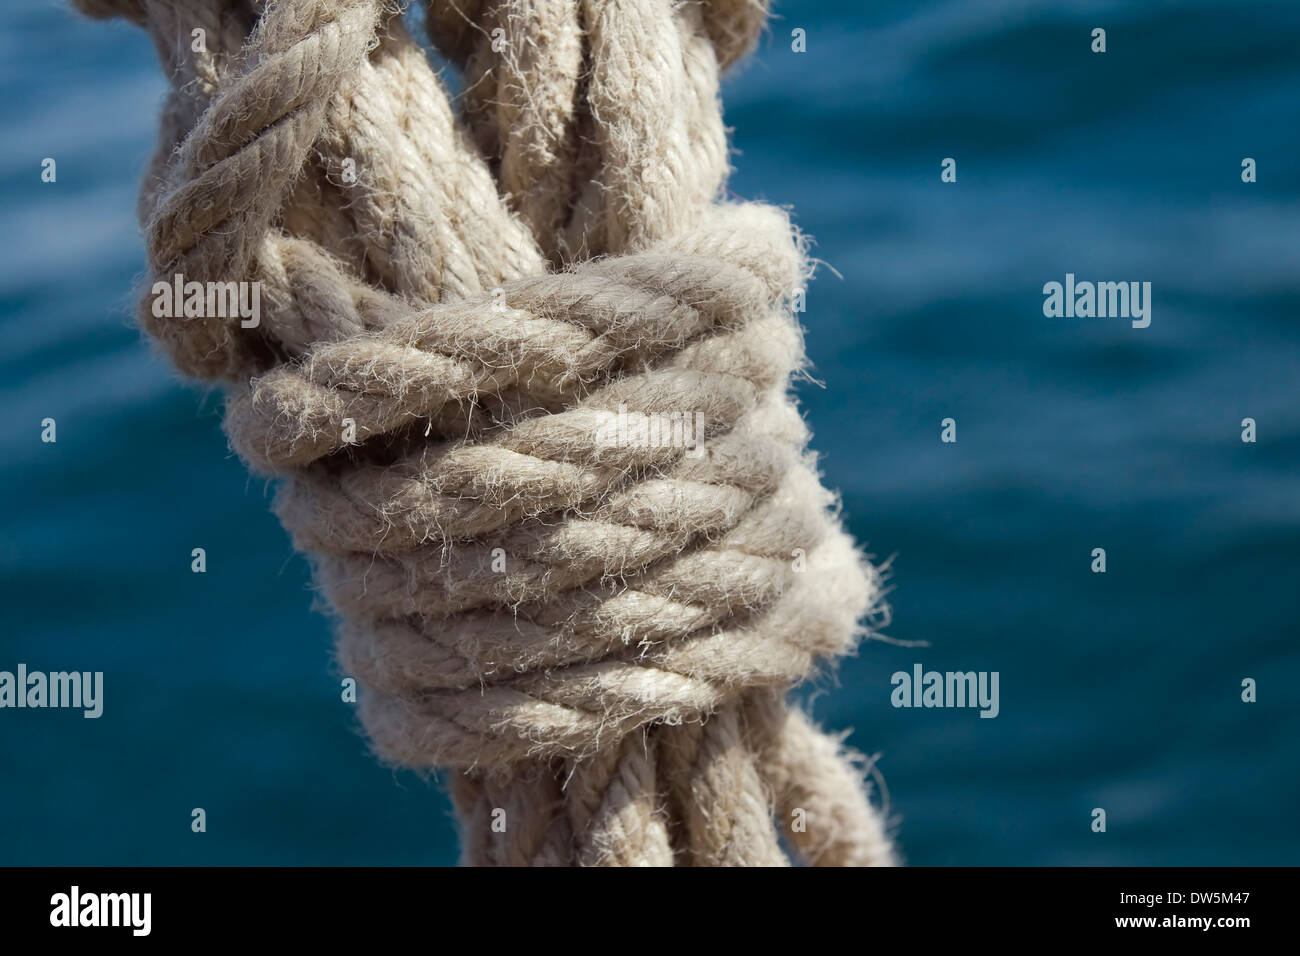 Noeud sur une corde contre l'eau de mer Banque D'Images